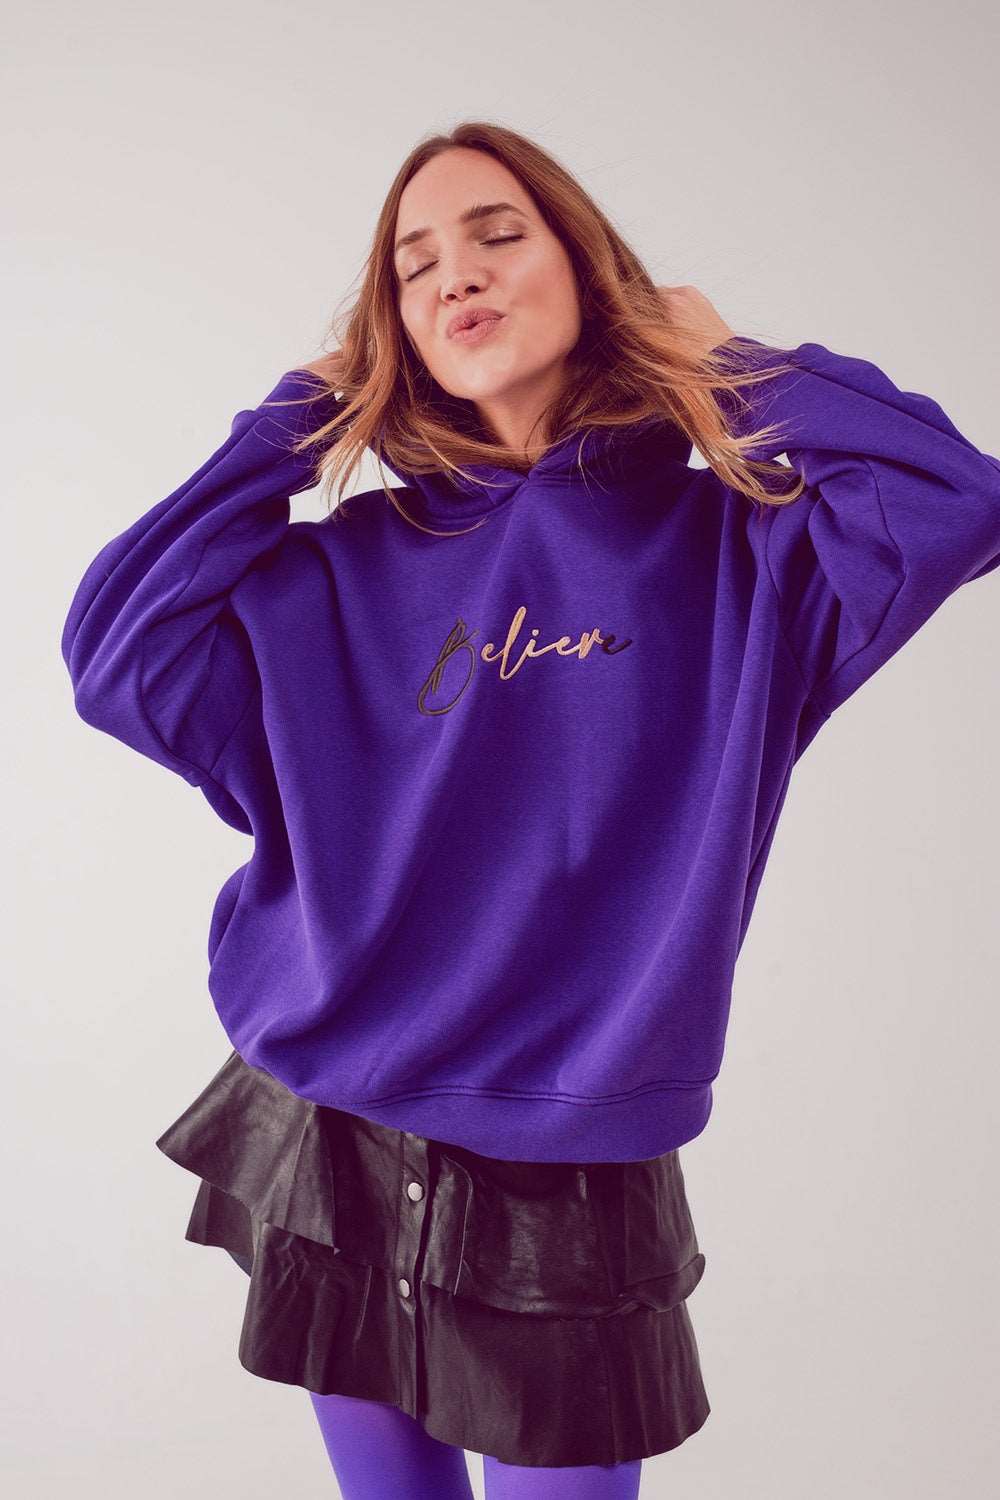 Believe oversized hoodie in purple Szua Store